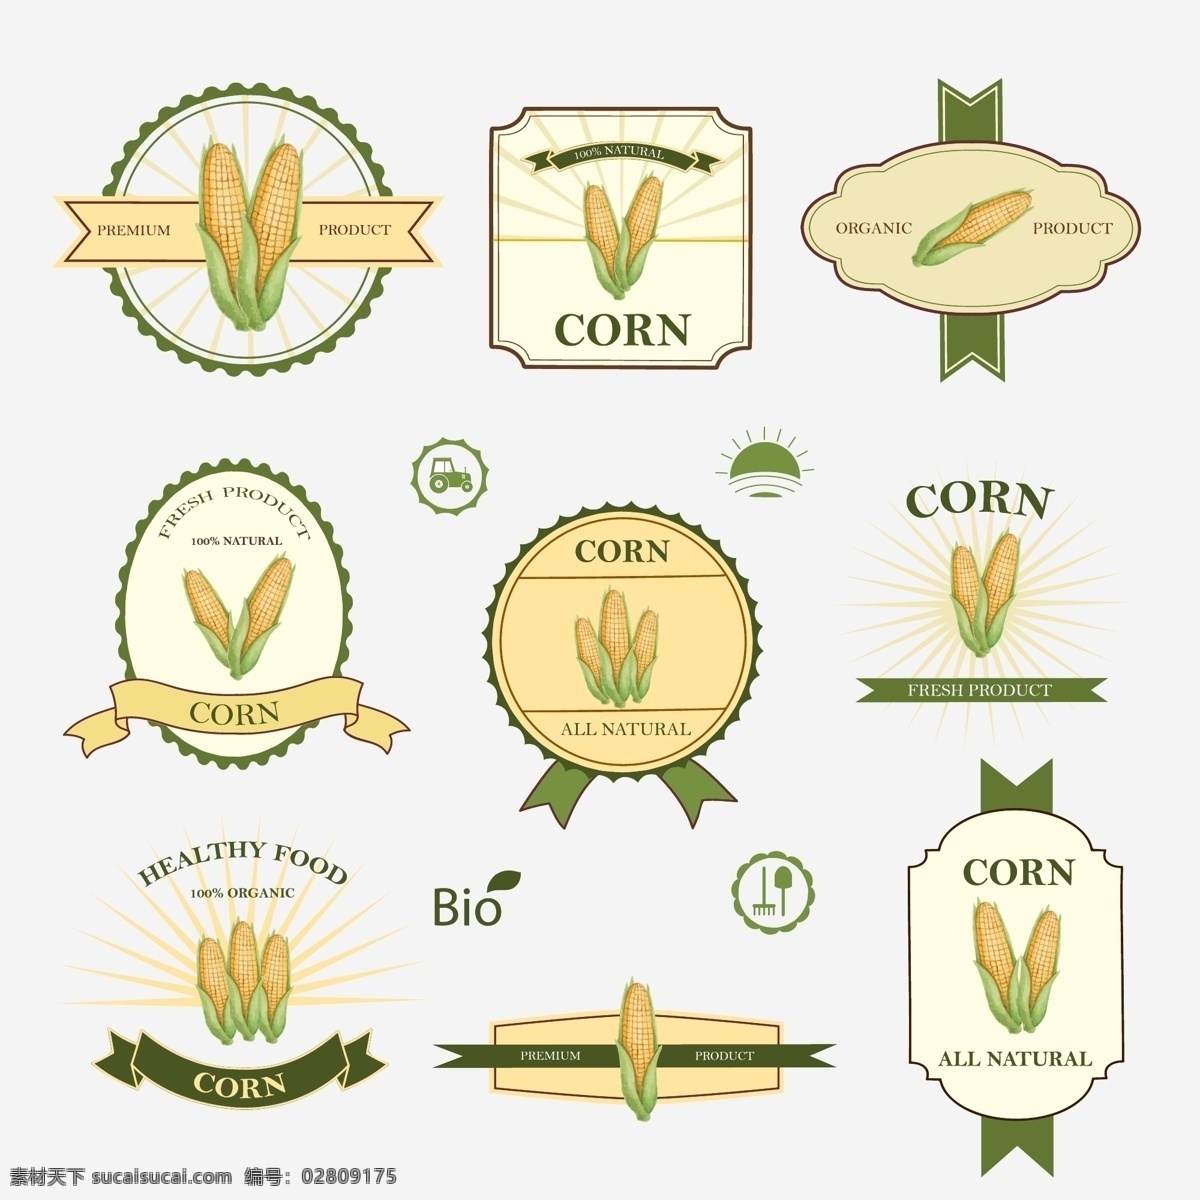 玉米 产品 标签 矢量图 有机食品 纯天然食品 农作物